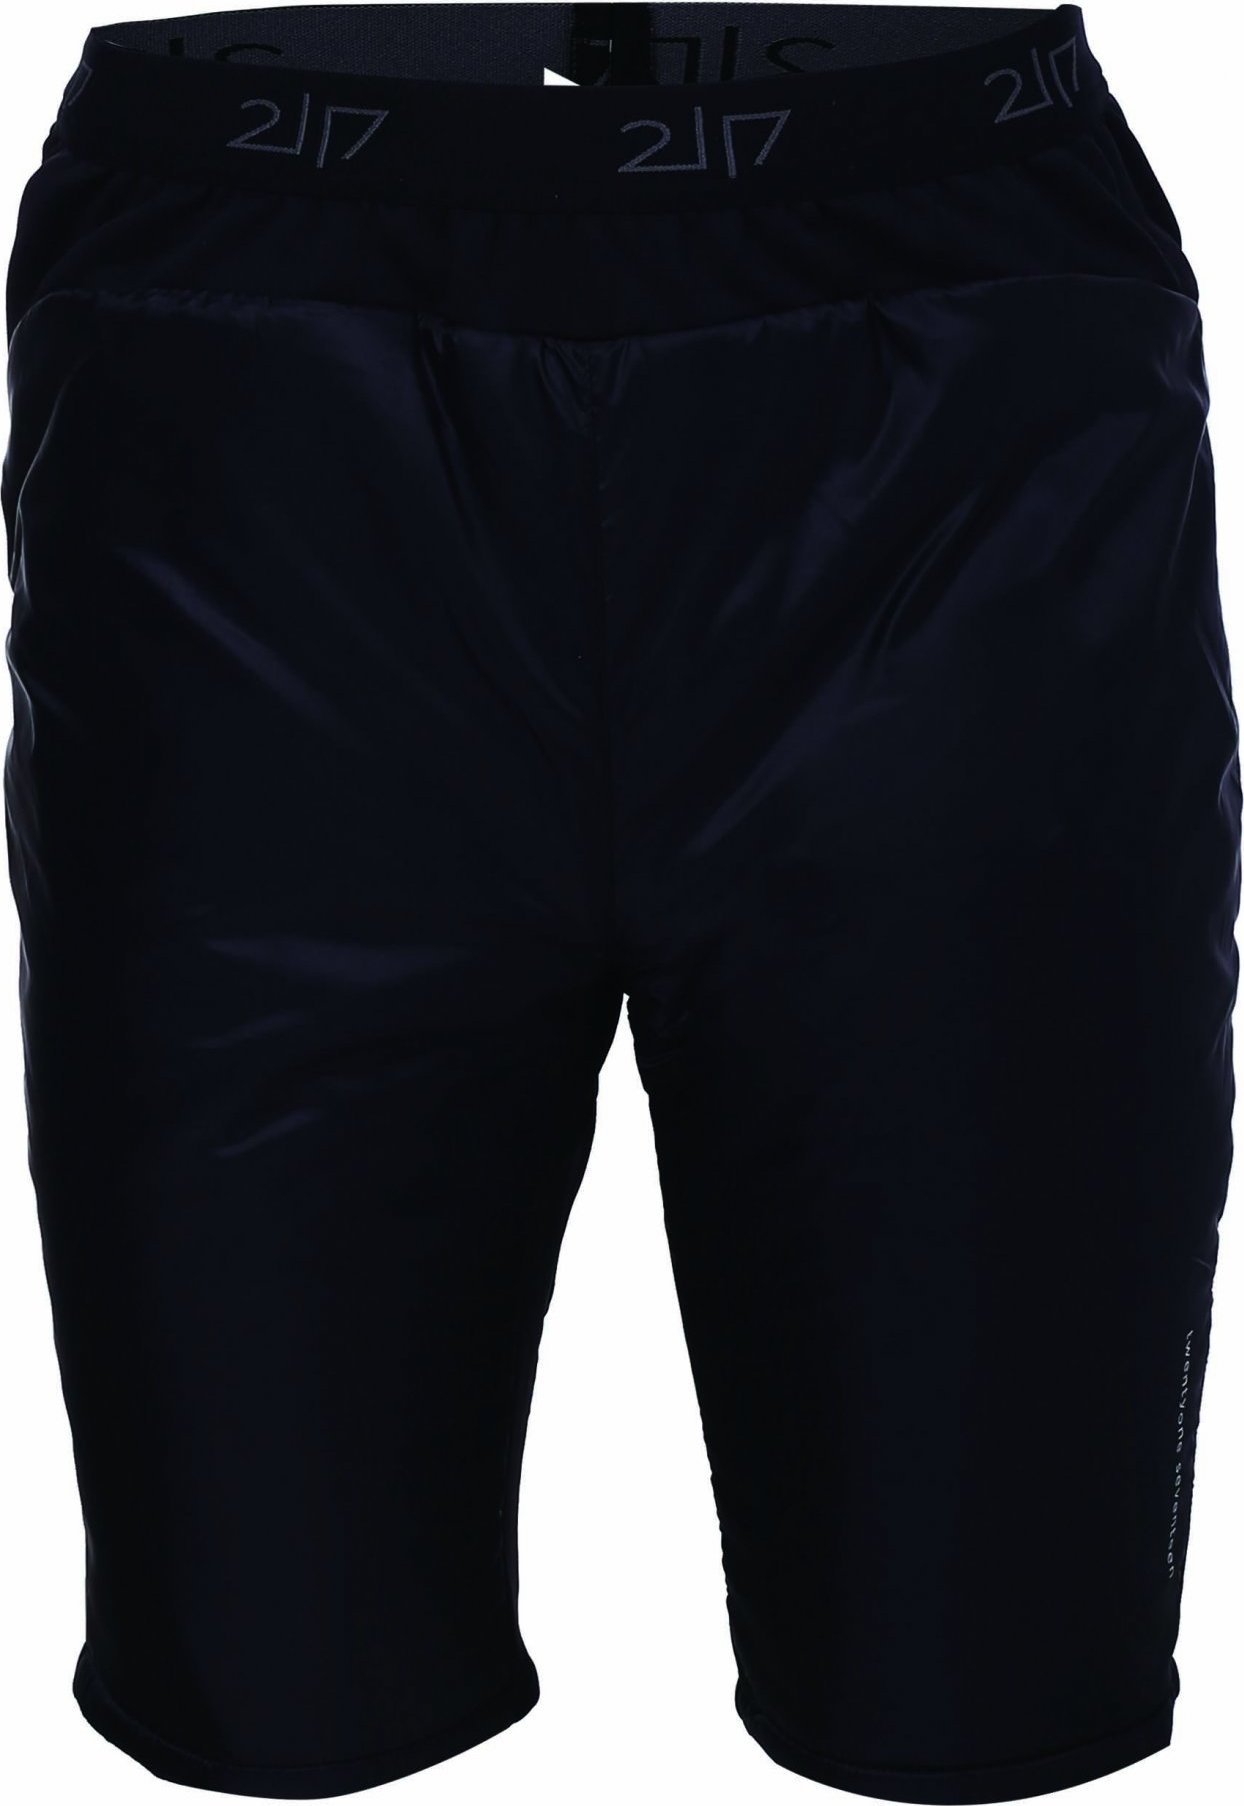 Pánské lehké zateplené primaloft kalhoty 2117 Olden Eco černá Velikost: M